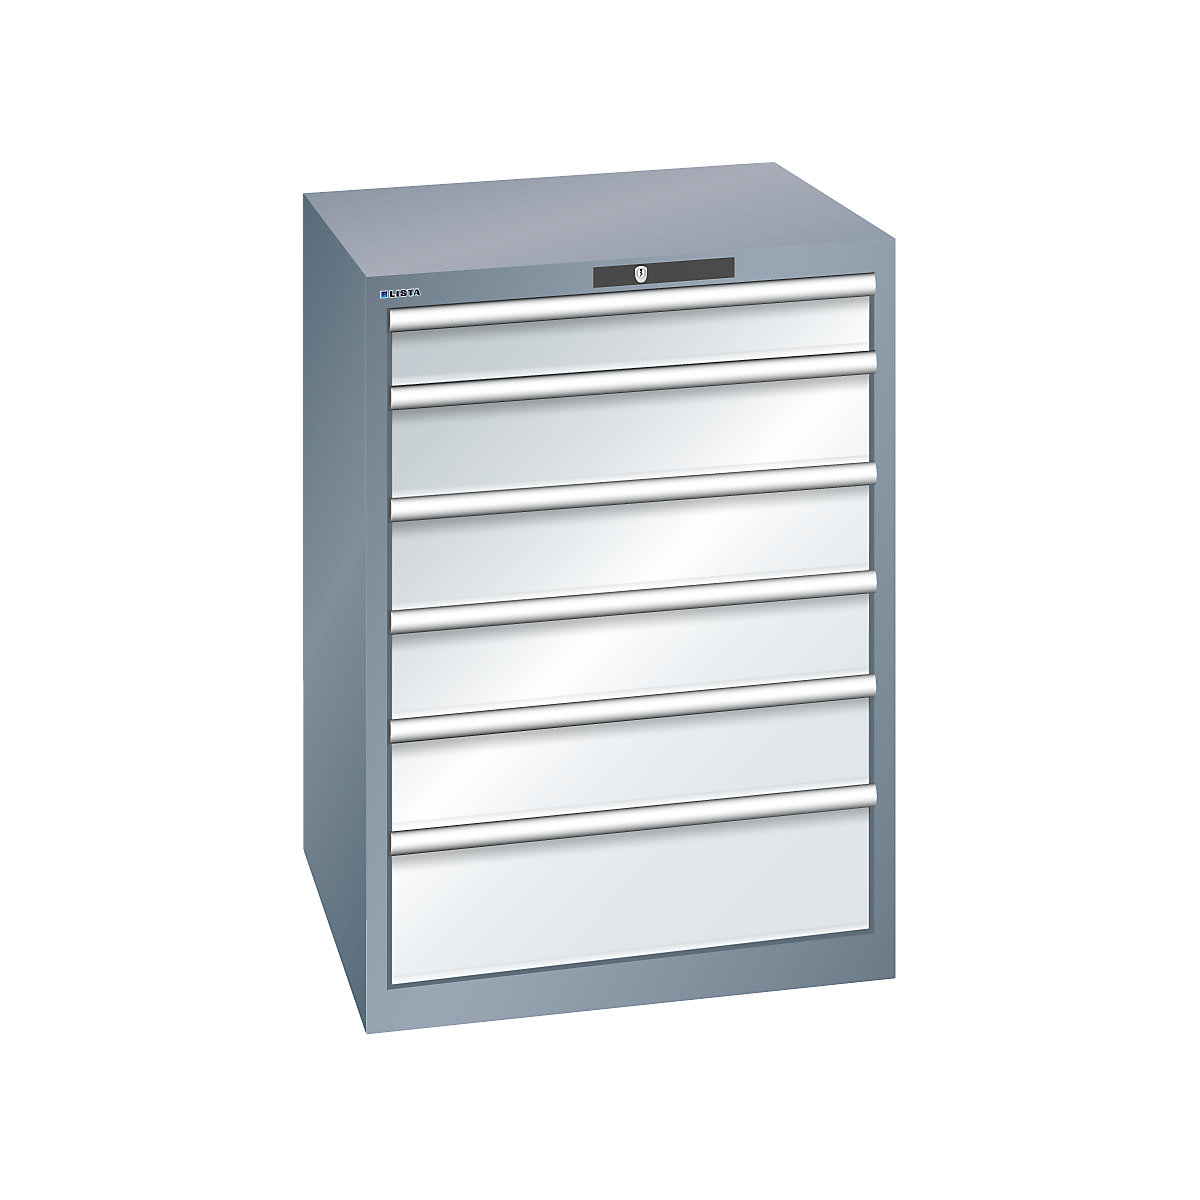 LISTA – Armoire à tiroirs en tôle d'acier, h x l 1000 x 717 mm, 6 tiroirs, gris métallisé / gris clair